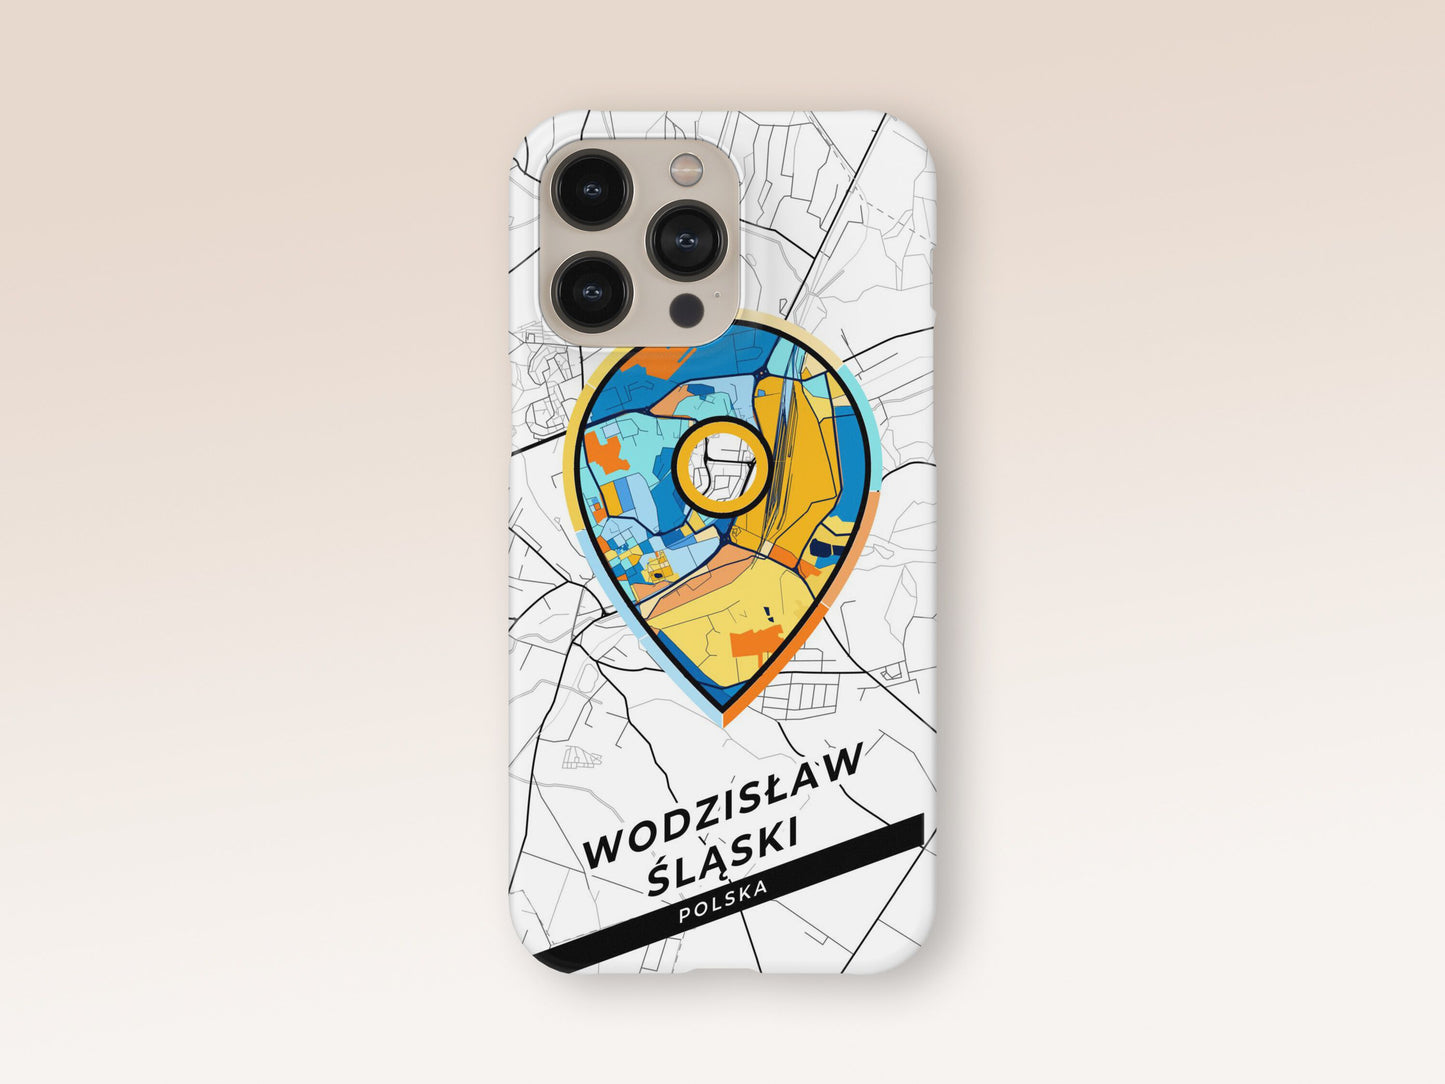 Wodzisław Śląski Poland slim phone case with colorful icon 1